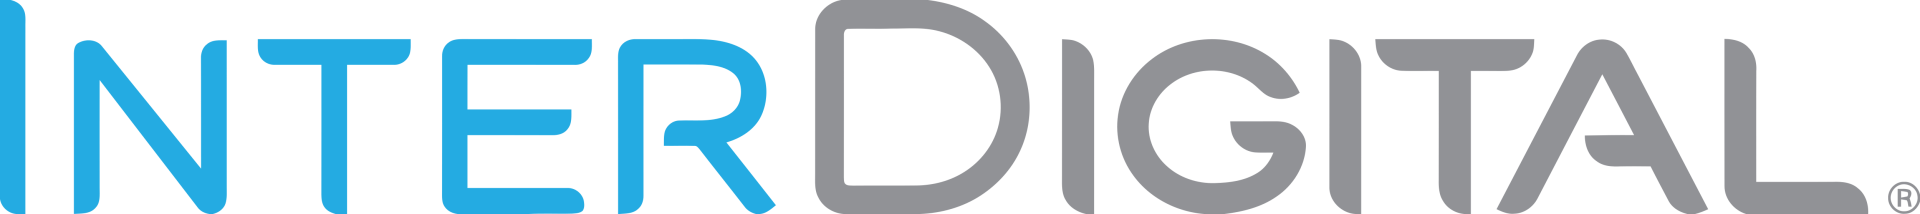 Trusted company logo